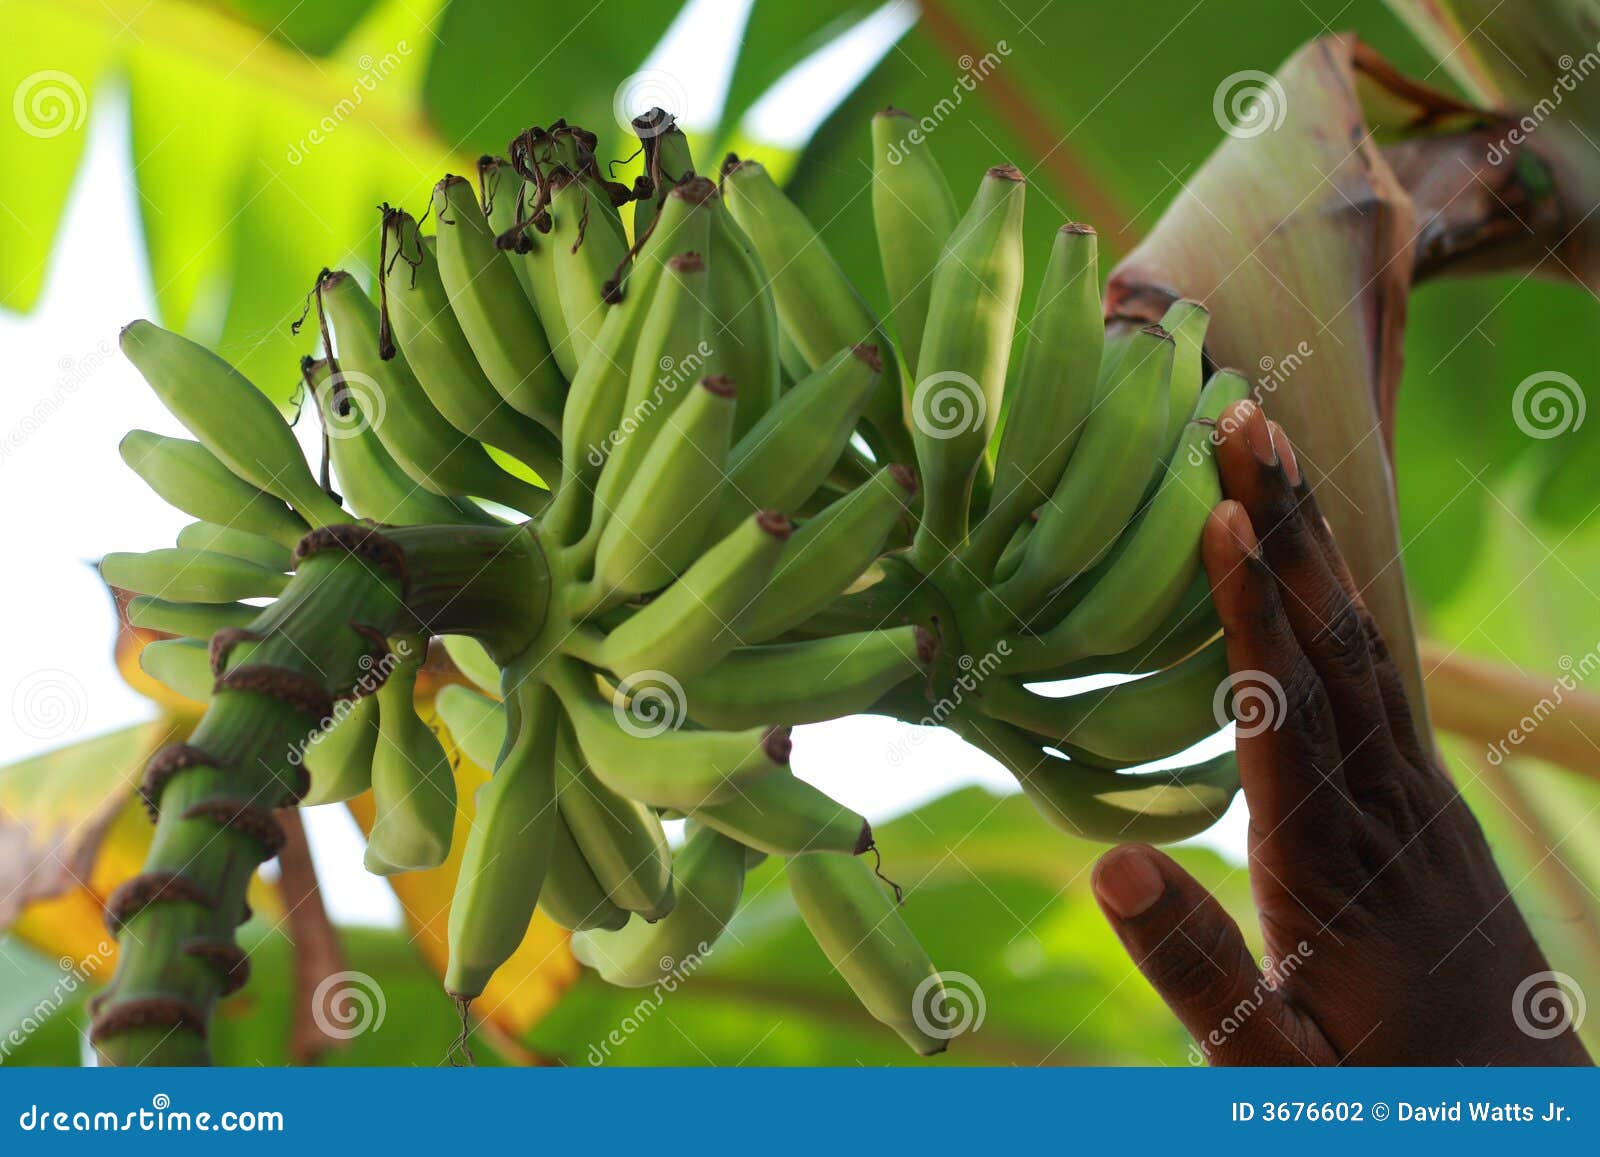 immature bananas on banana tree